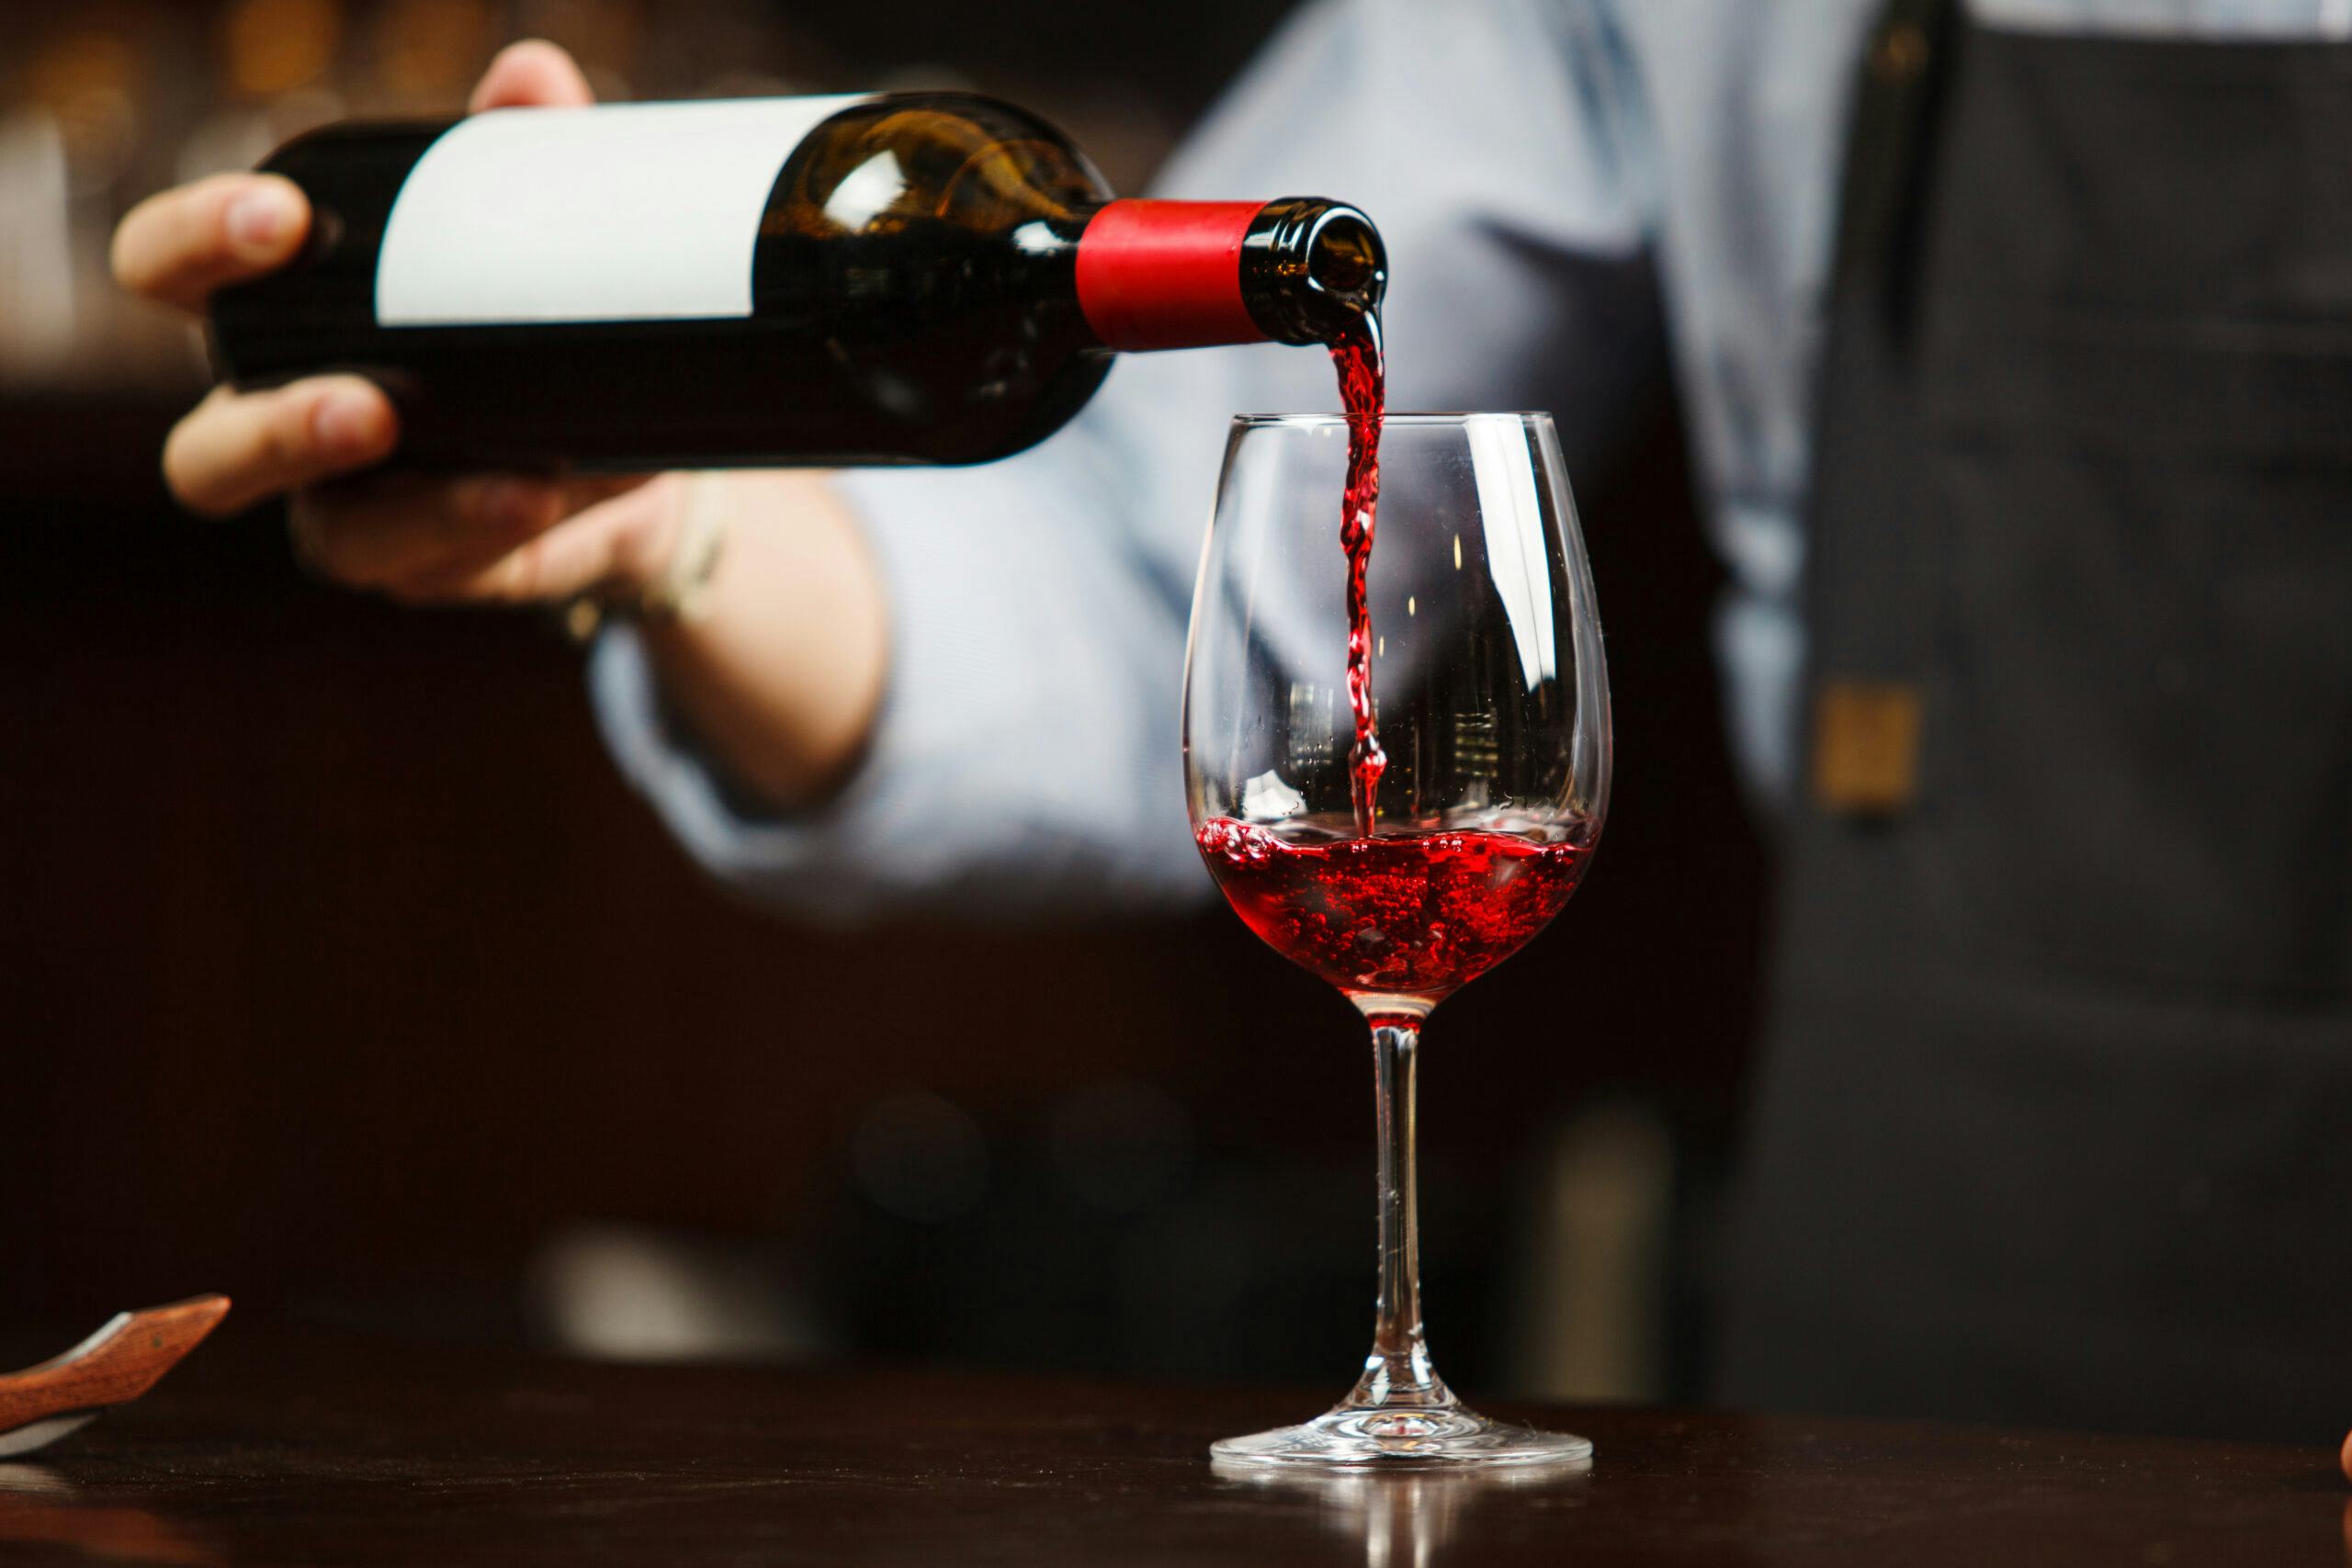 Wijntrends volgens de nieuwe generatie: 'Gast gaat voor elegant met mooie zuurgraad'